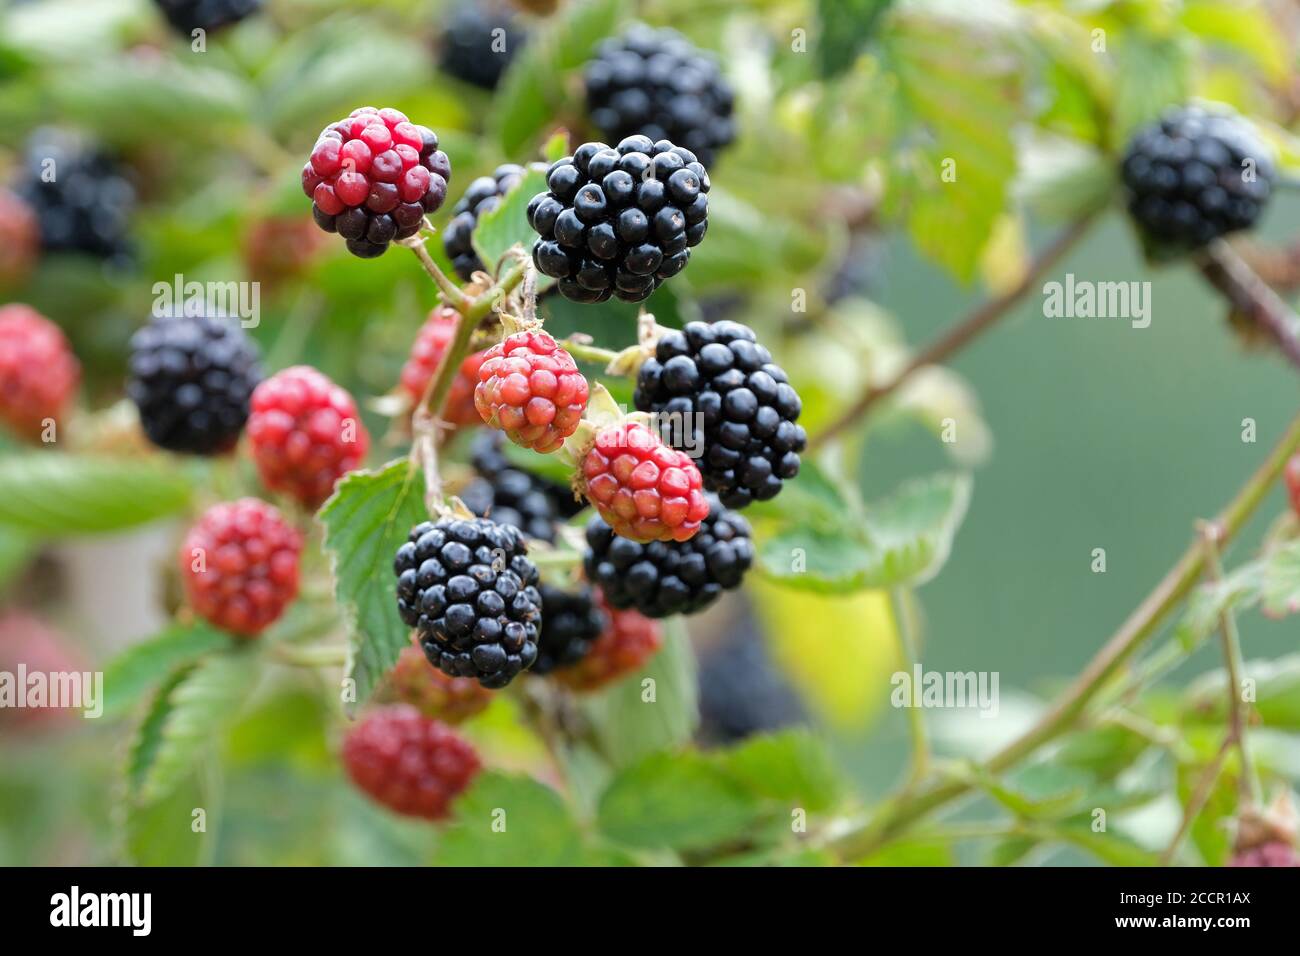 blackberry Navaho senza spina. Rubus fruticosus "Navaho". Frutta matura che cresce su un cespuglio Foto Stock